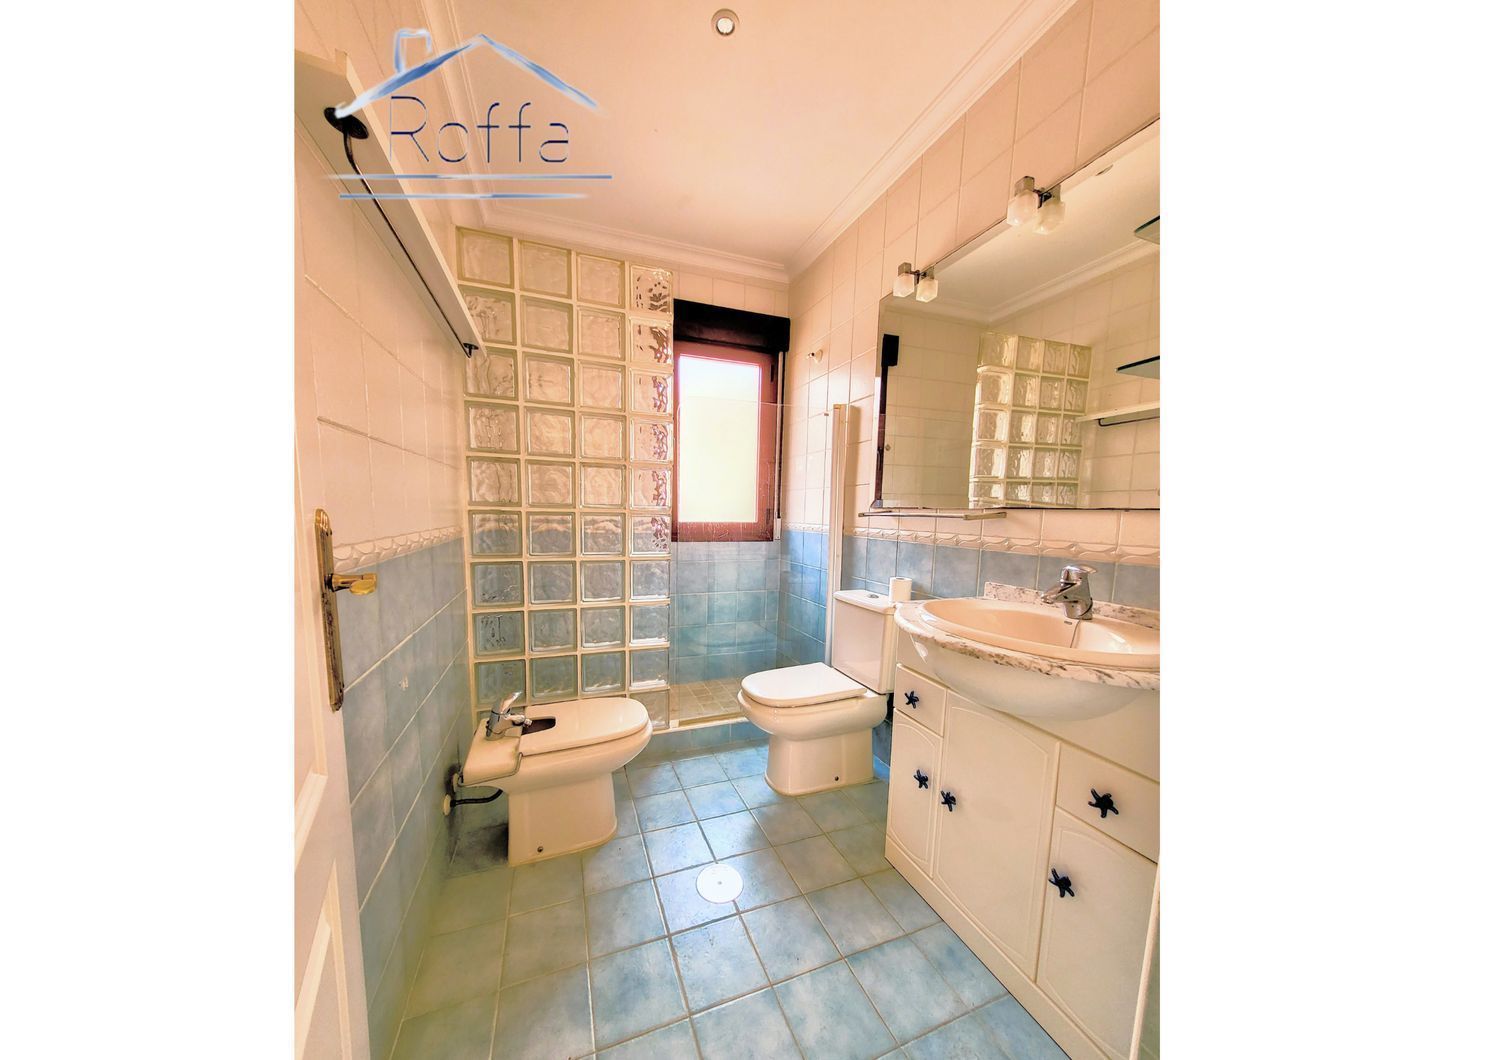 Área de Motril, Granada, 4 Bedrooms Bedrooms, ,4 BathroomsBathrooms,House,For Sale